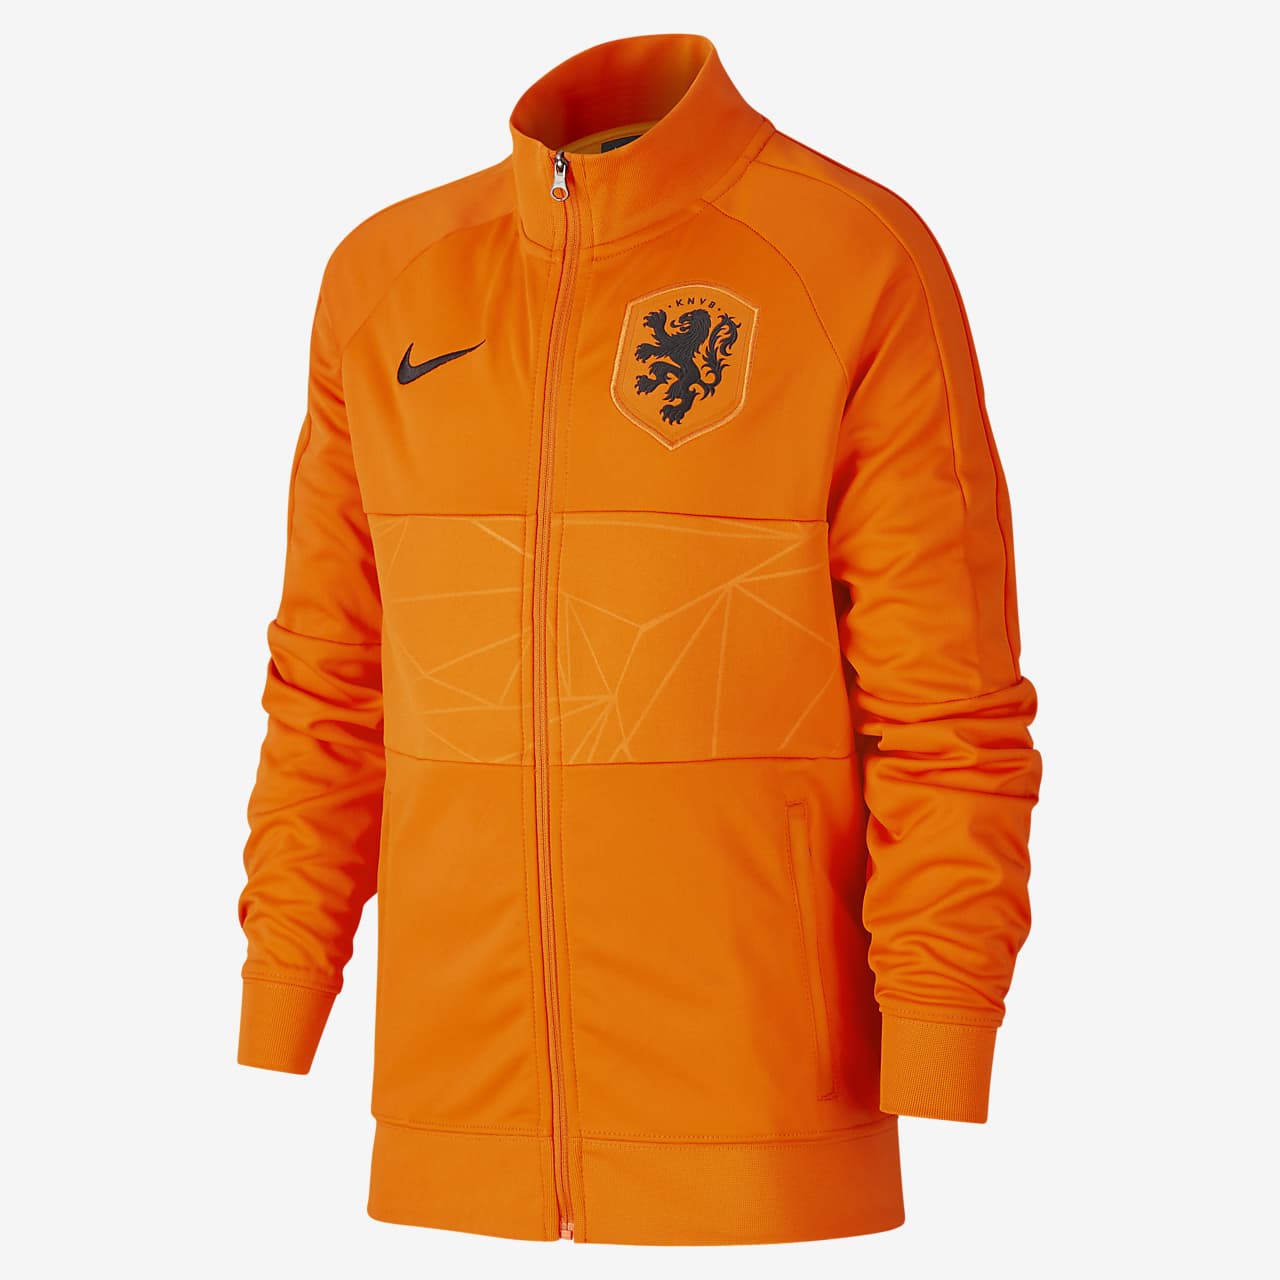 Netherlands Older Kids' Football Jacket